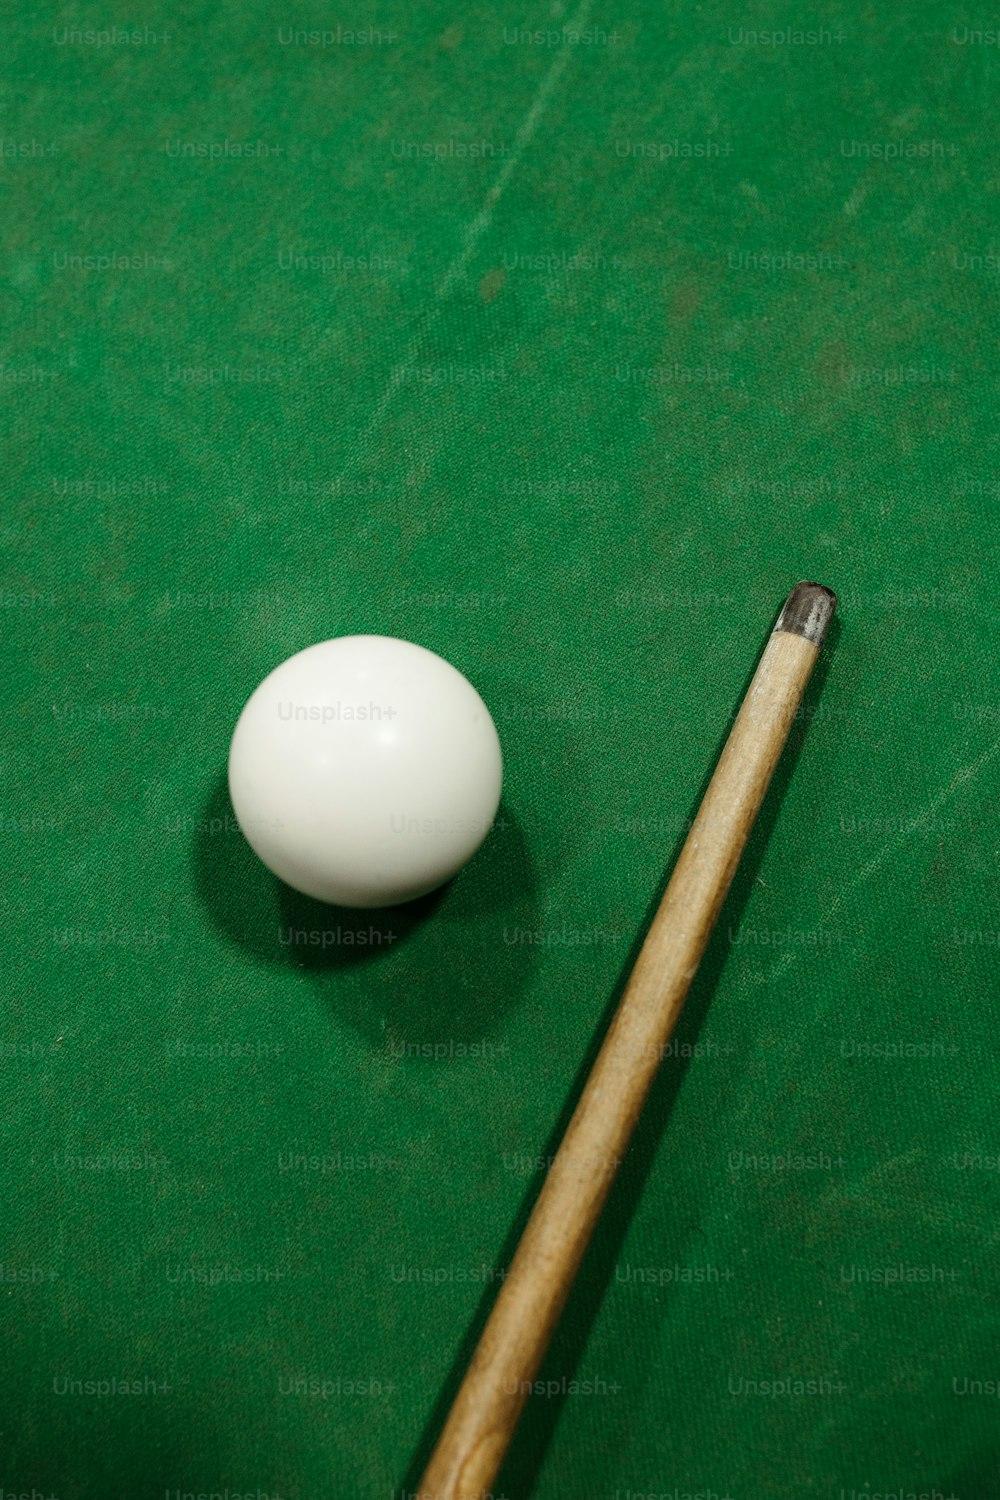 Mesa de billar con bolas y tacos sobre un fondo blanco.